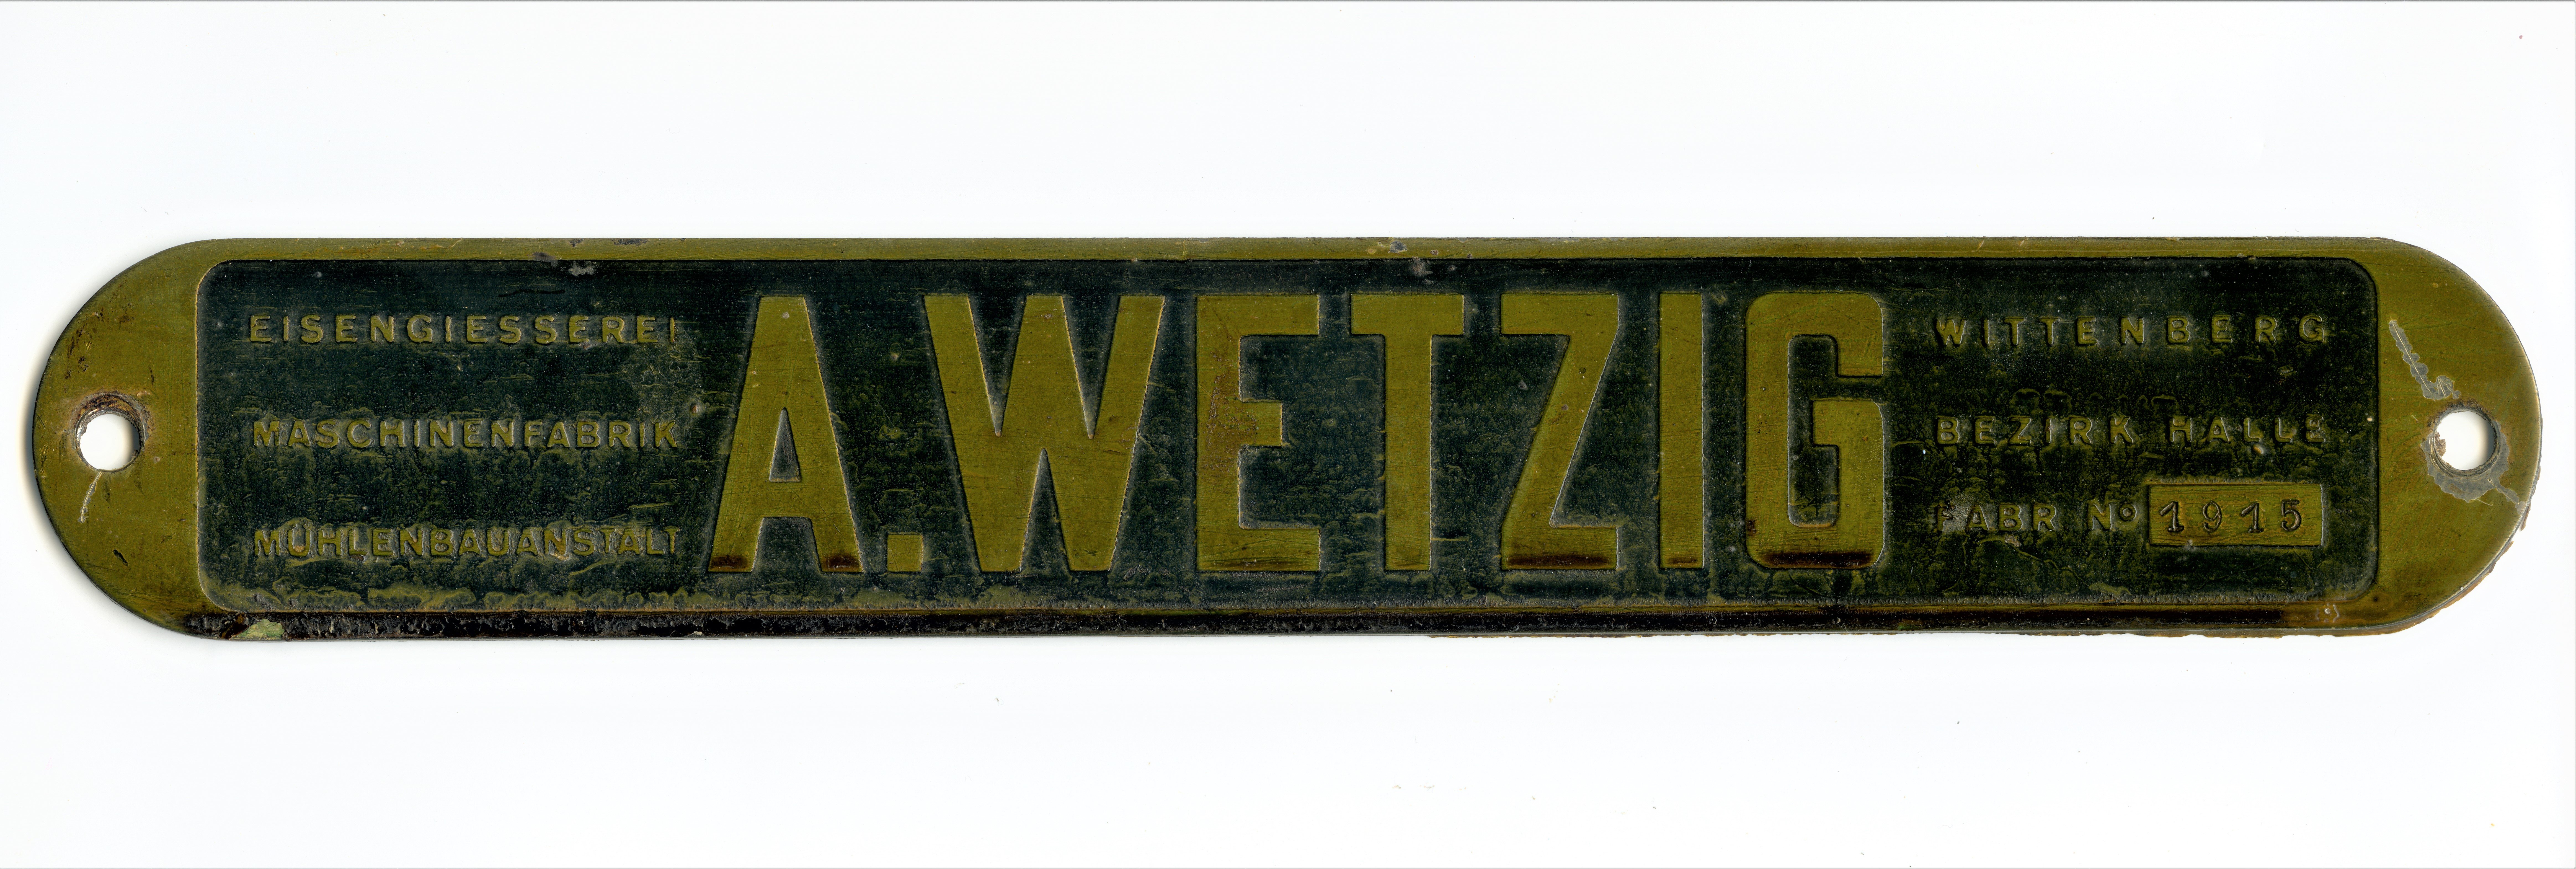 Firmenschild Wetzig, Nr. 1915 (Historische Mühle von Sanssouci CC BY-NC-SA)